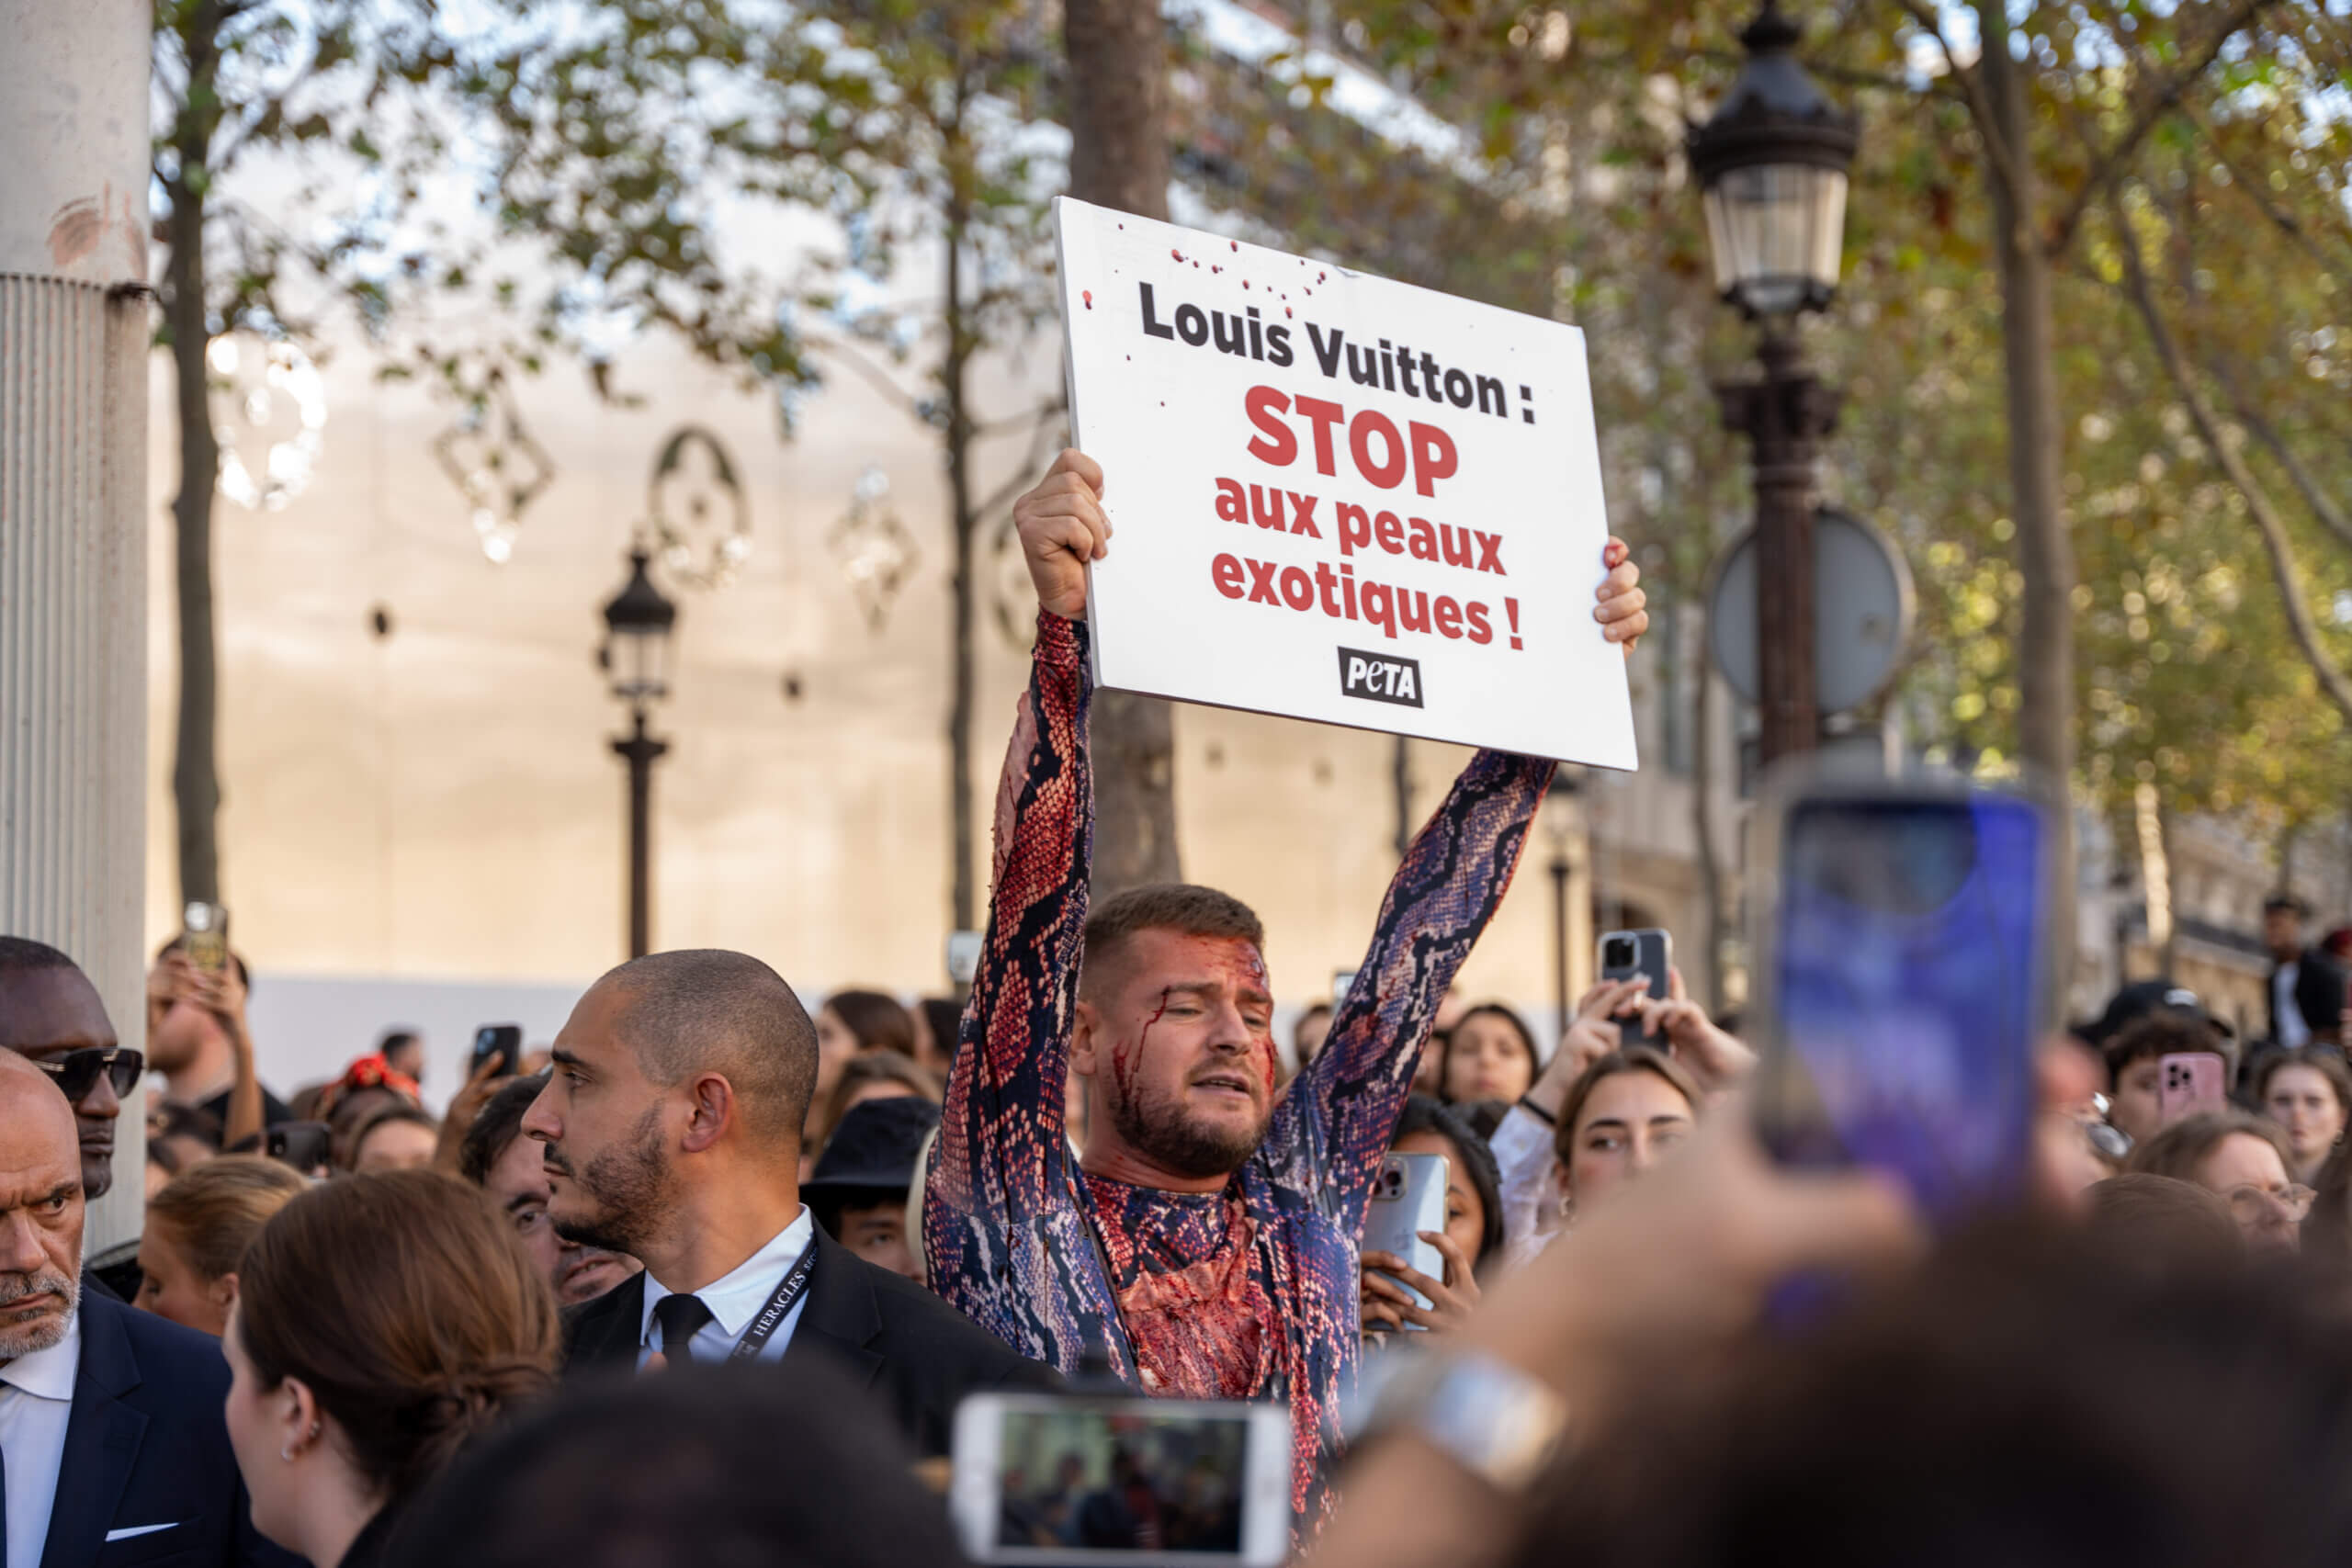 Jeremstar arrêté au défilé Louis Vuitton alors qu’il dénonçait la cruauté des peaux exotiques